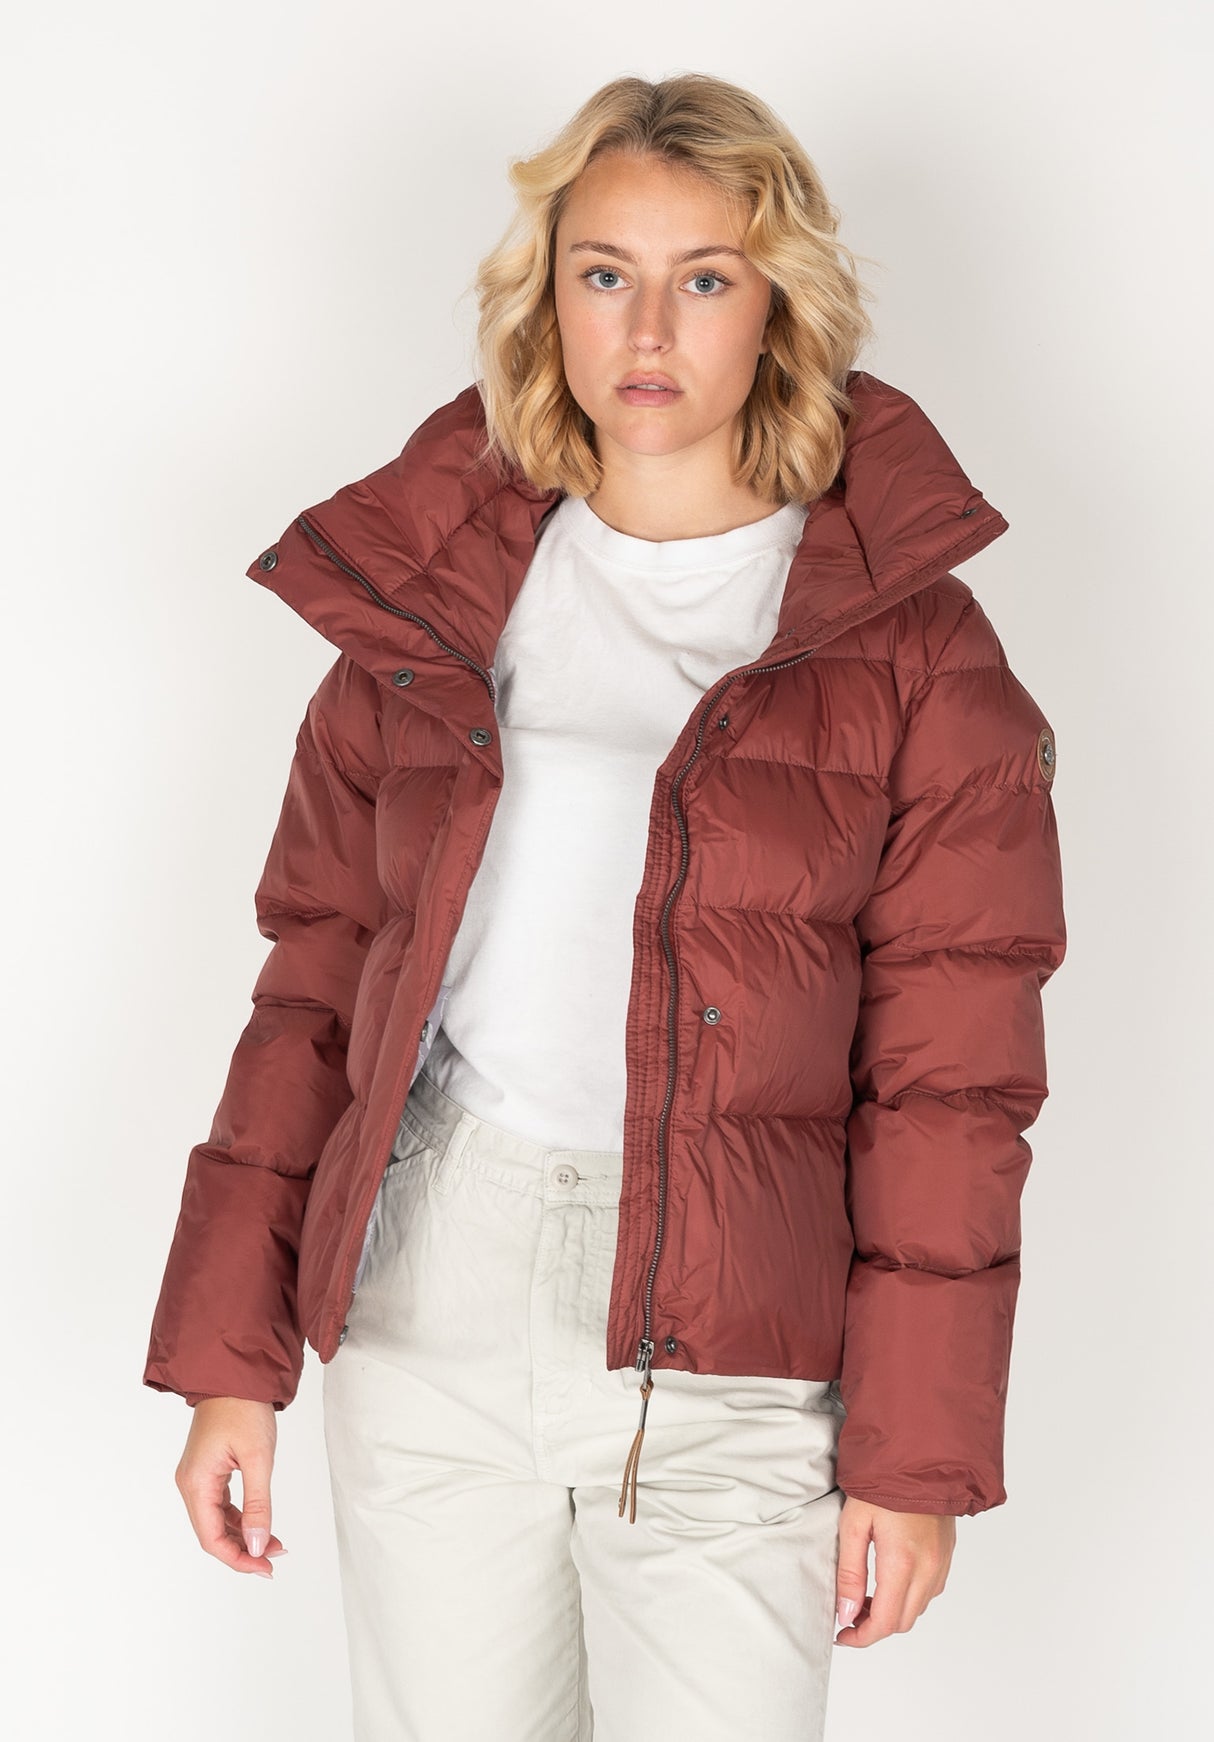 Lunis Ragwear Winter Jackets in Women TITUS terracotta – for